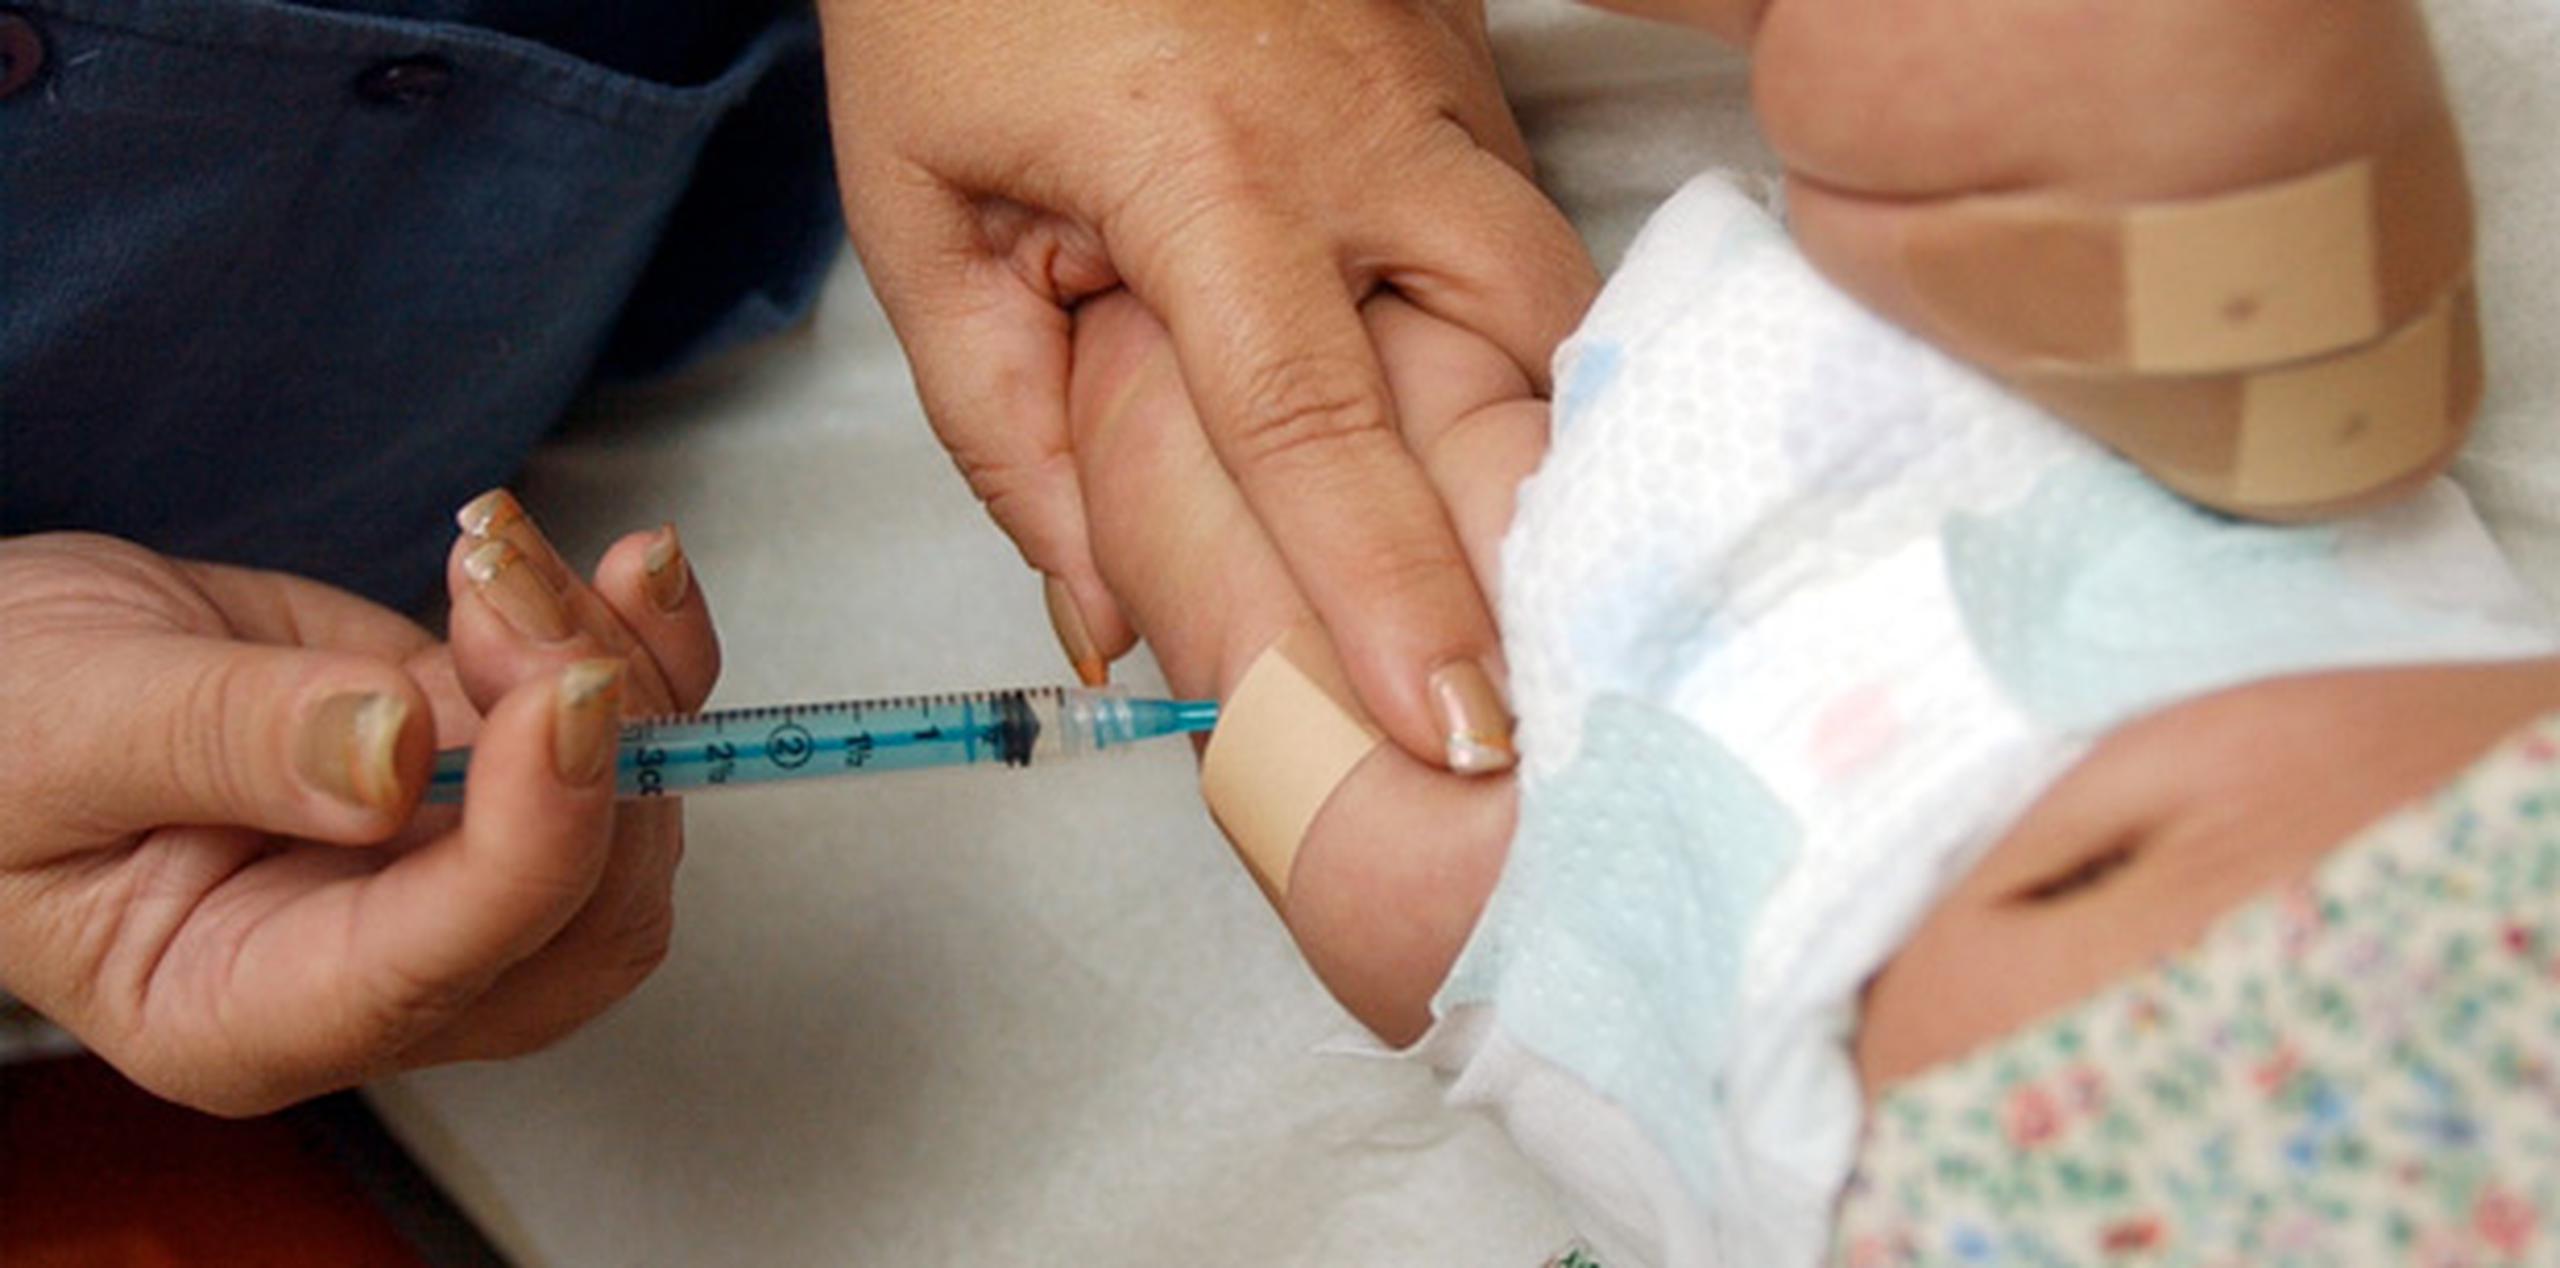 La Academia Estadounidense de Pediatría indica que los médicos deben resaltar la importancia de la vacunación durante las consultas. (Archivo)